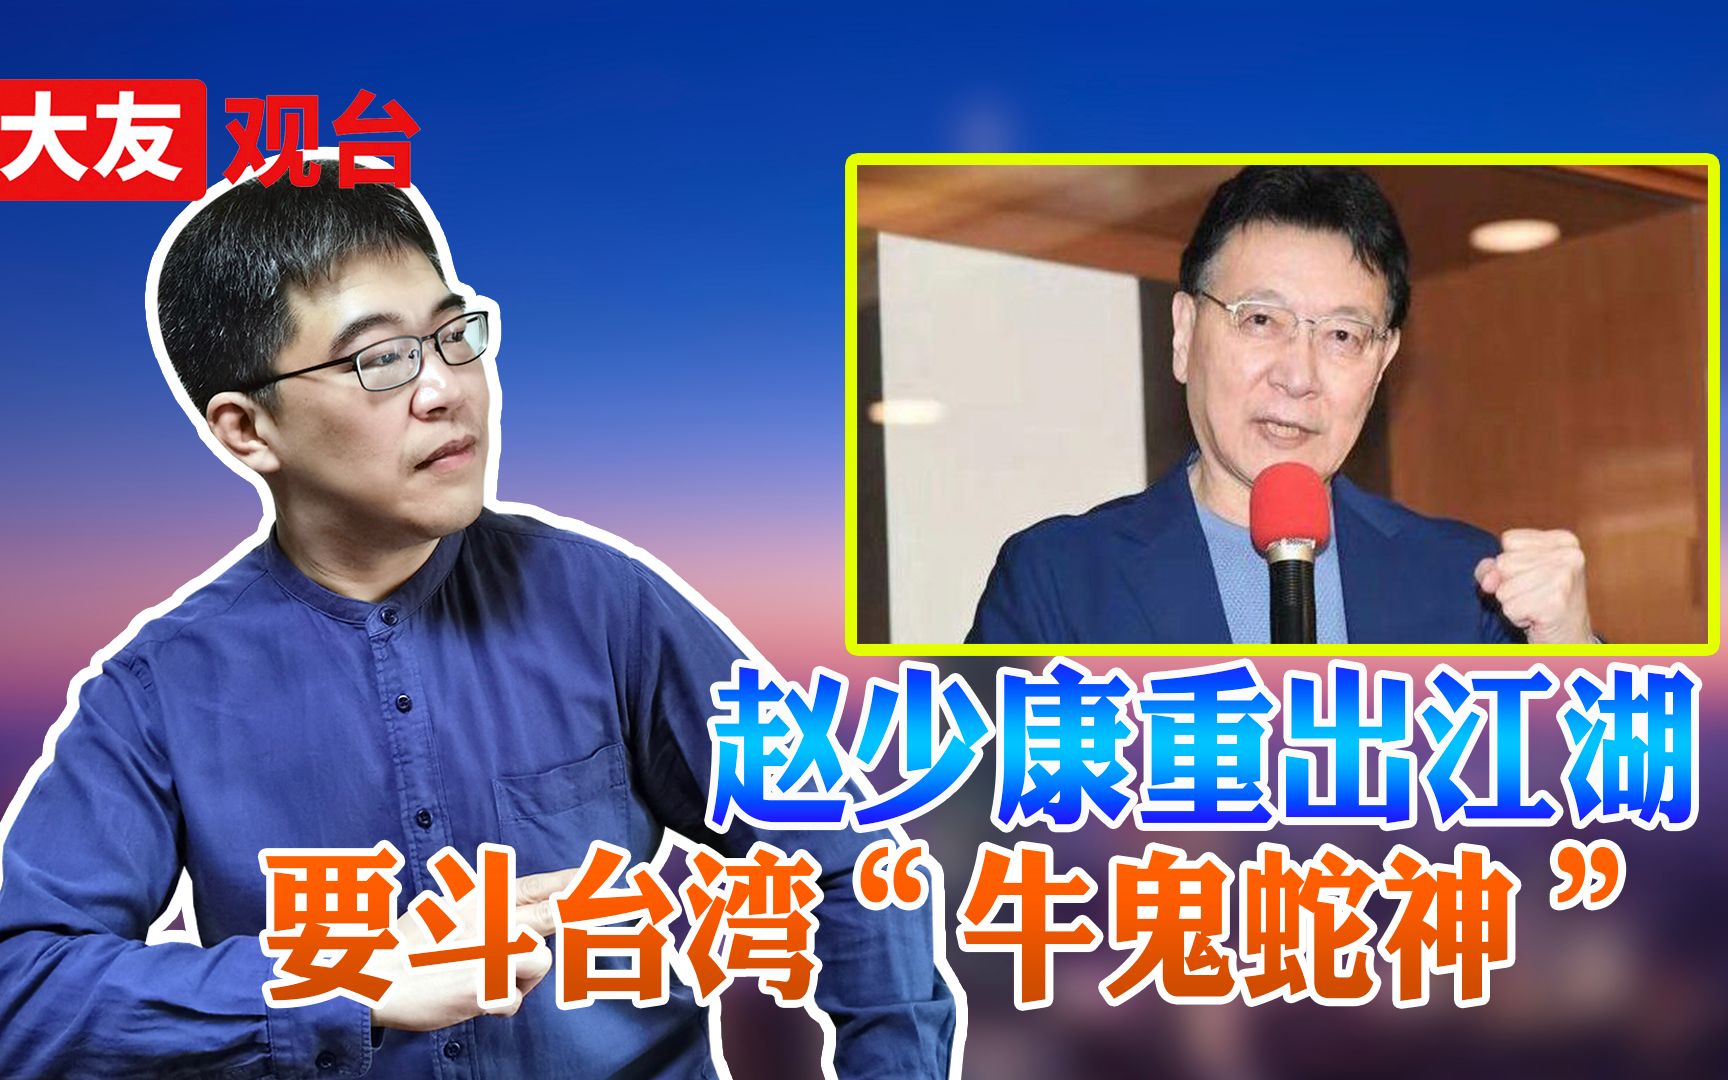 70岁赵少康回到百年老店国民党 能否搅动台湾政坛一池春水